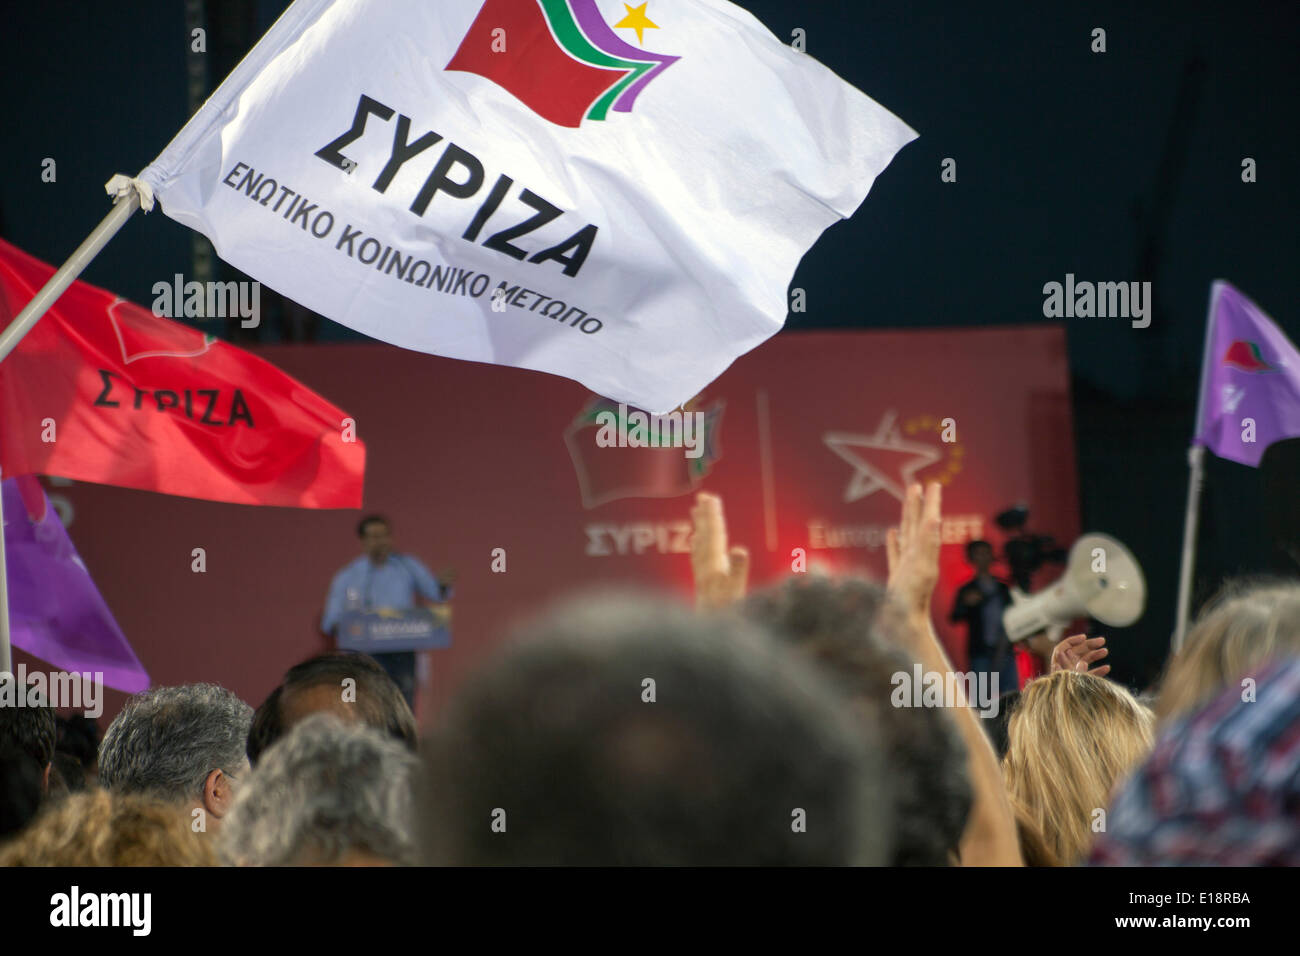 I Greci durante la manifestazione elettorale del partito Syriza. Evento elettorale per le elezioni del Parlamento europeo il 25 maggio 2014. 22.05.2014 Foto Stock